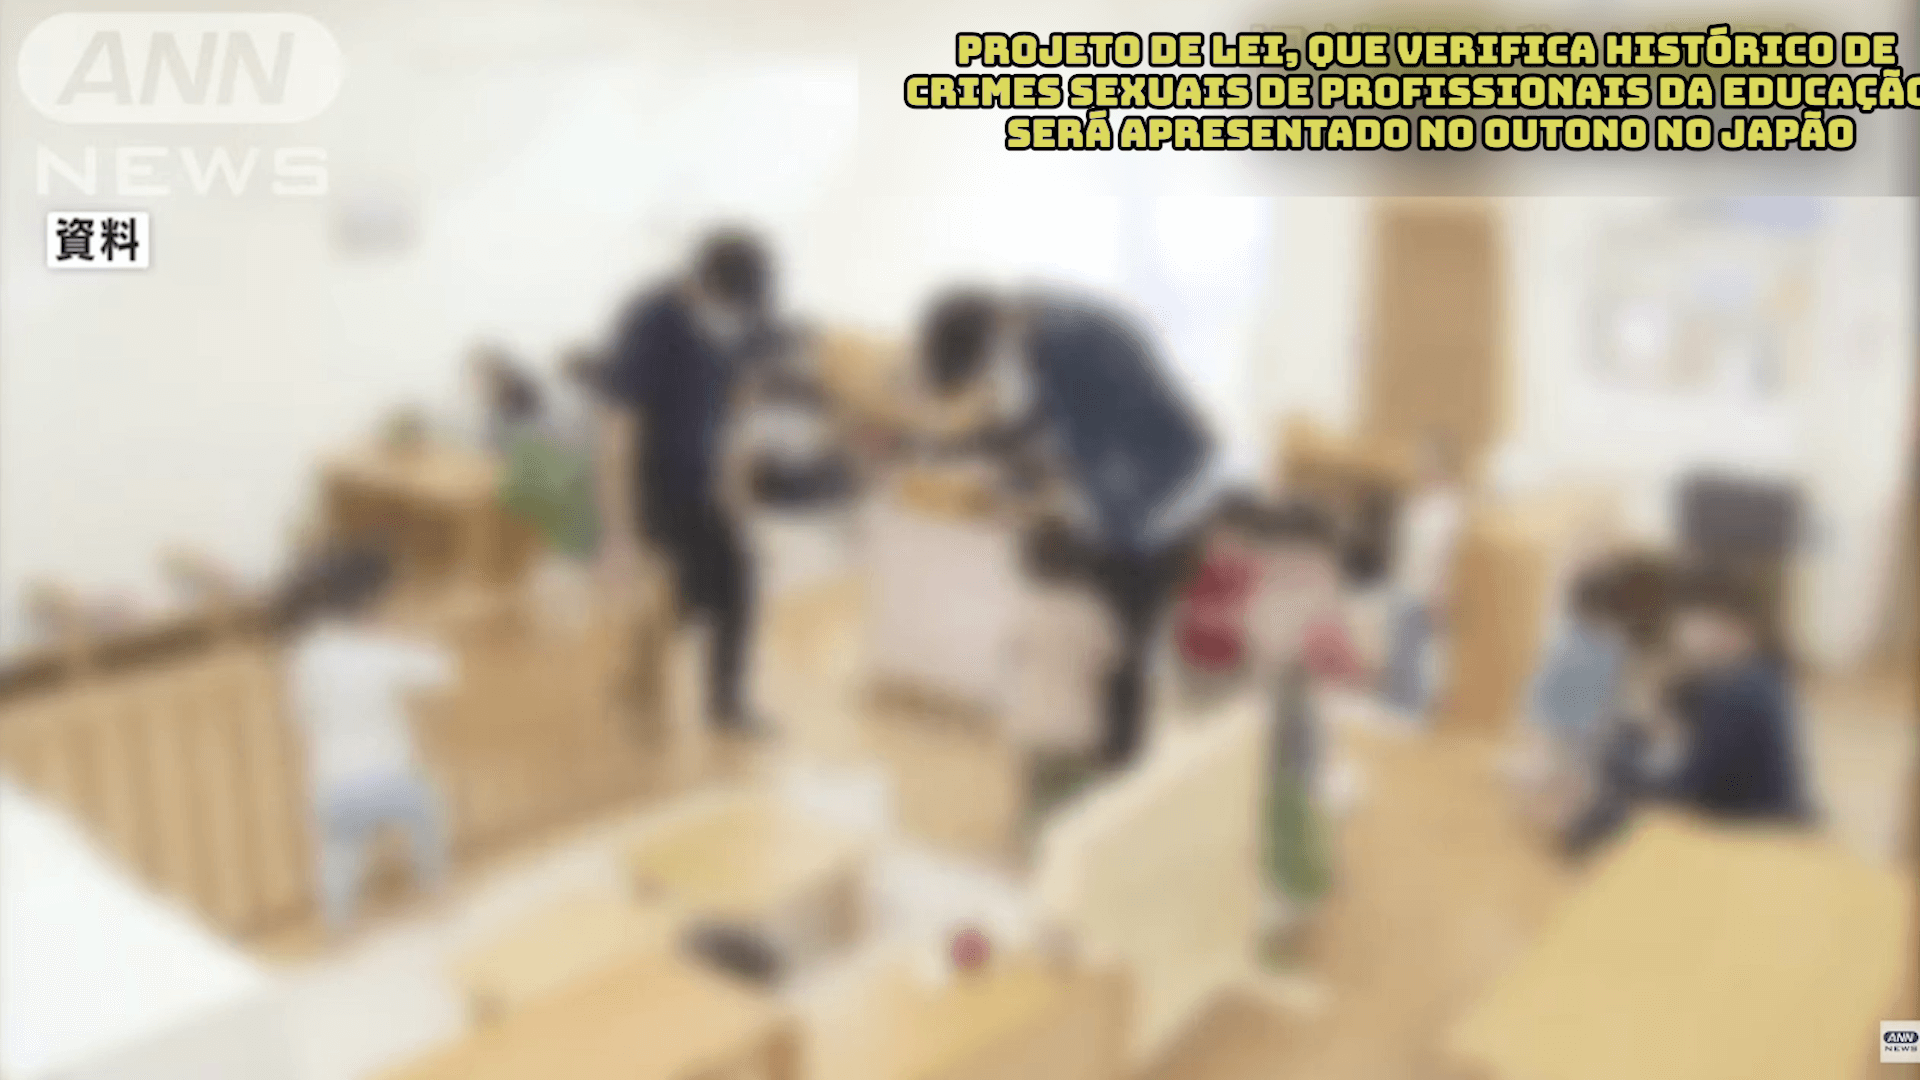 Projeto de Lei, que verifica histórico de crimes sexuais de profissionais da Educação, será apresentado no outono no Japão 